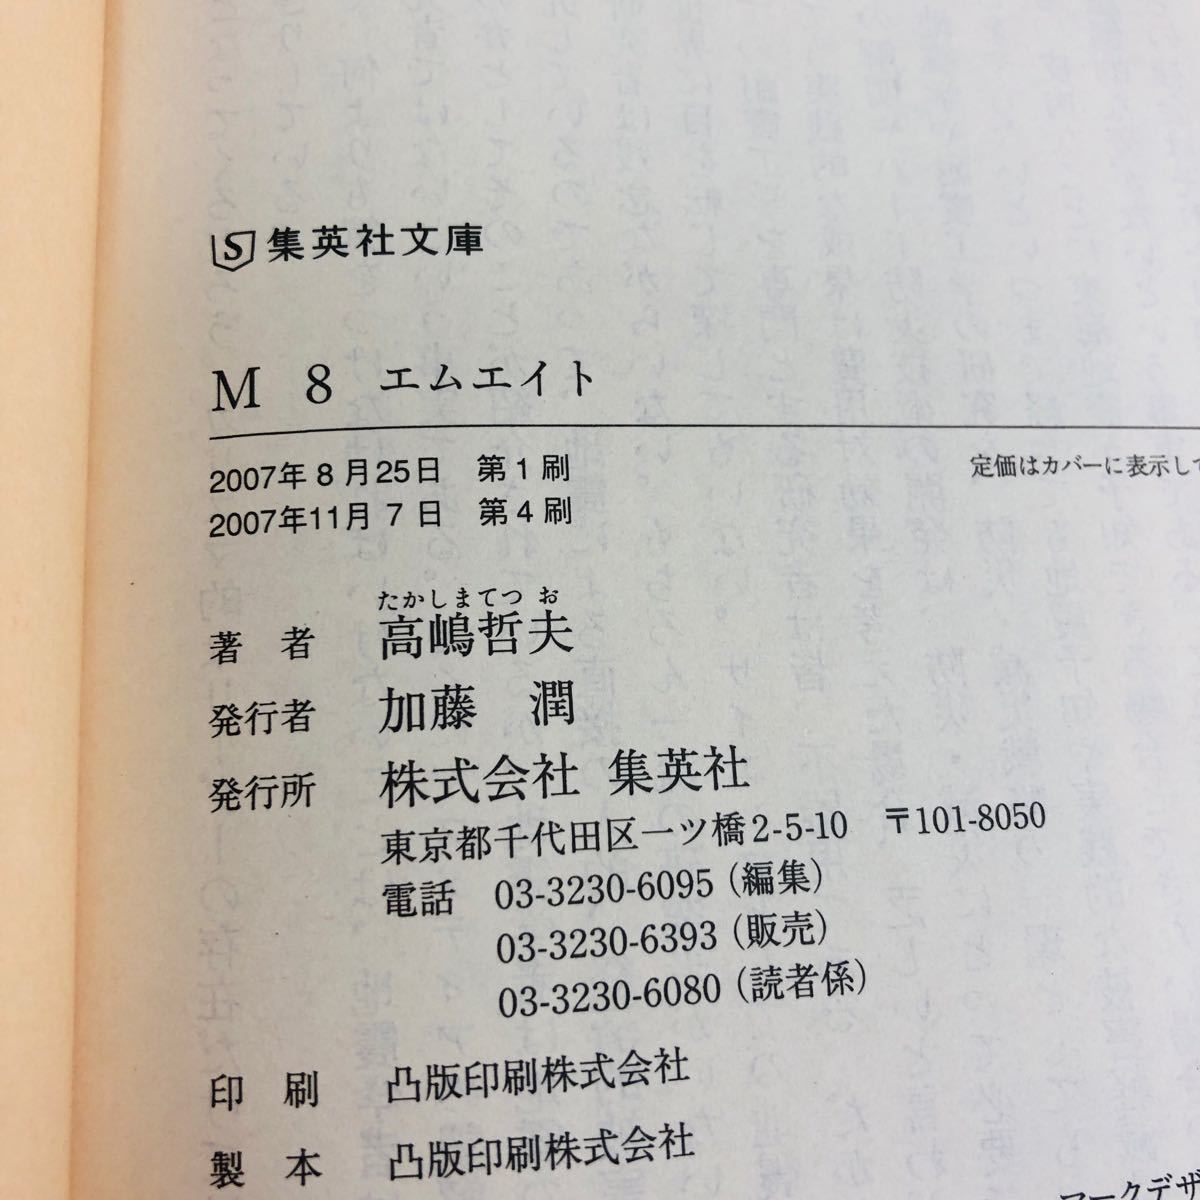 M8/高嶋哲夫　集英社文庫マンガセット